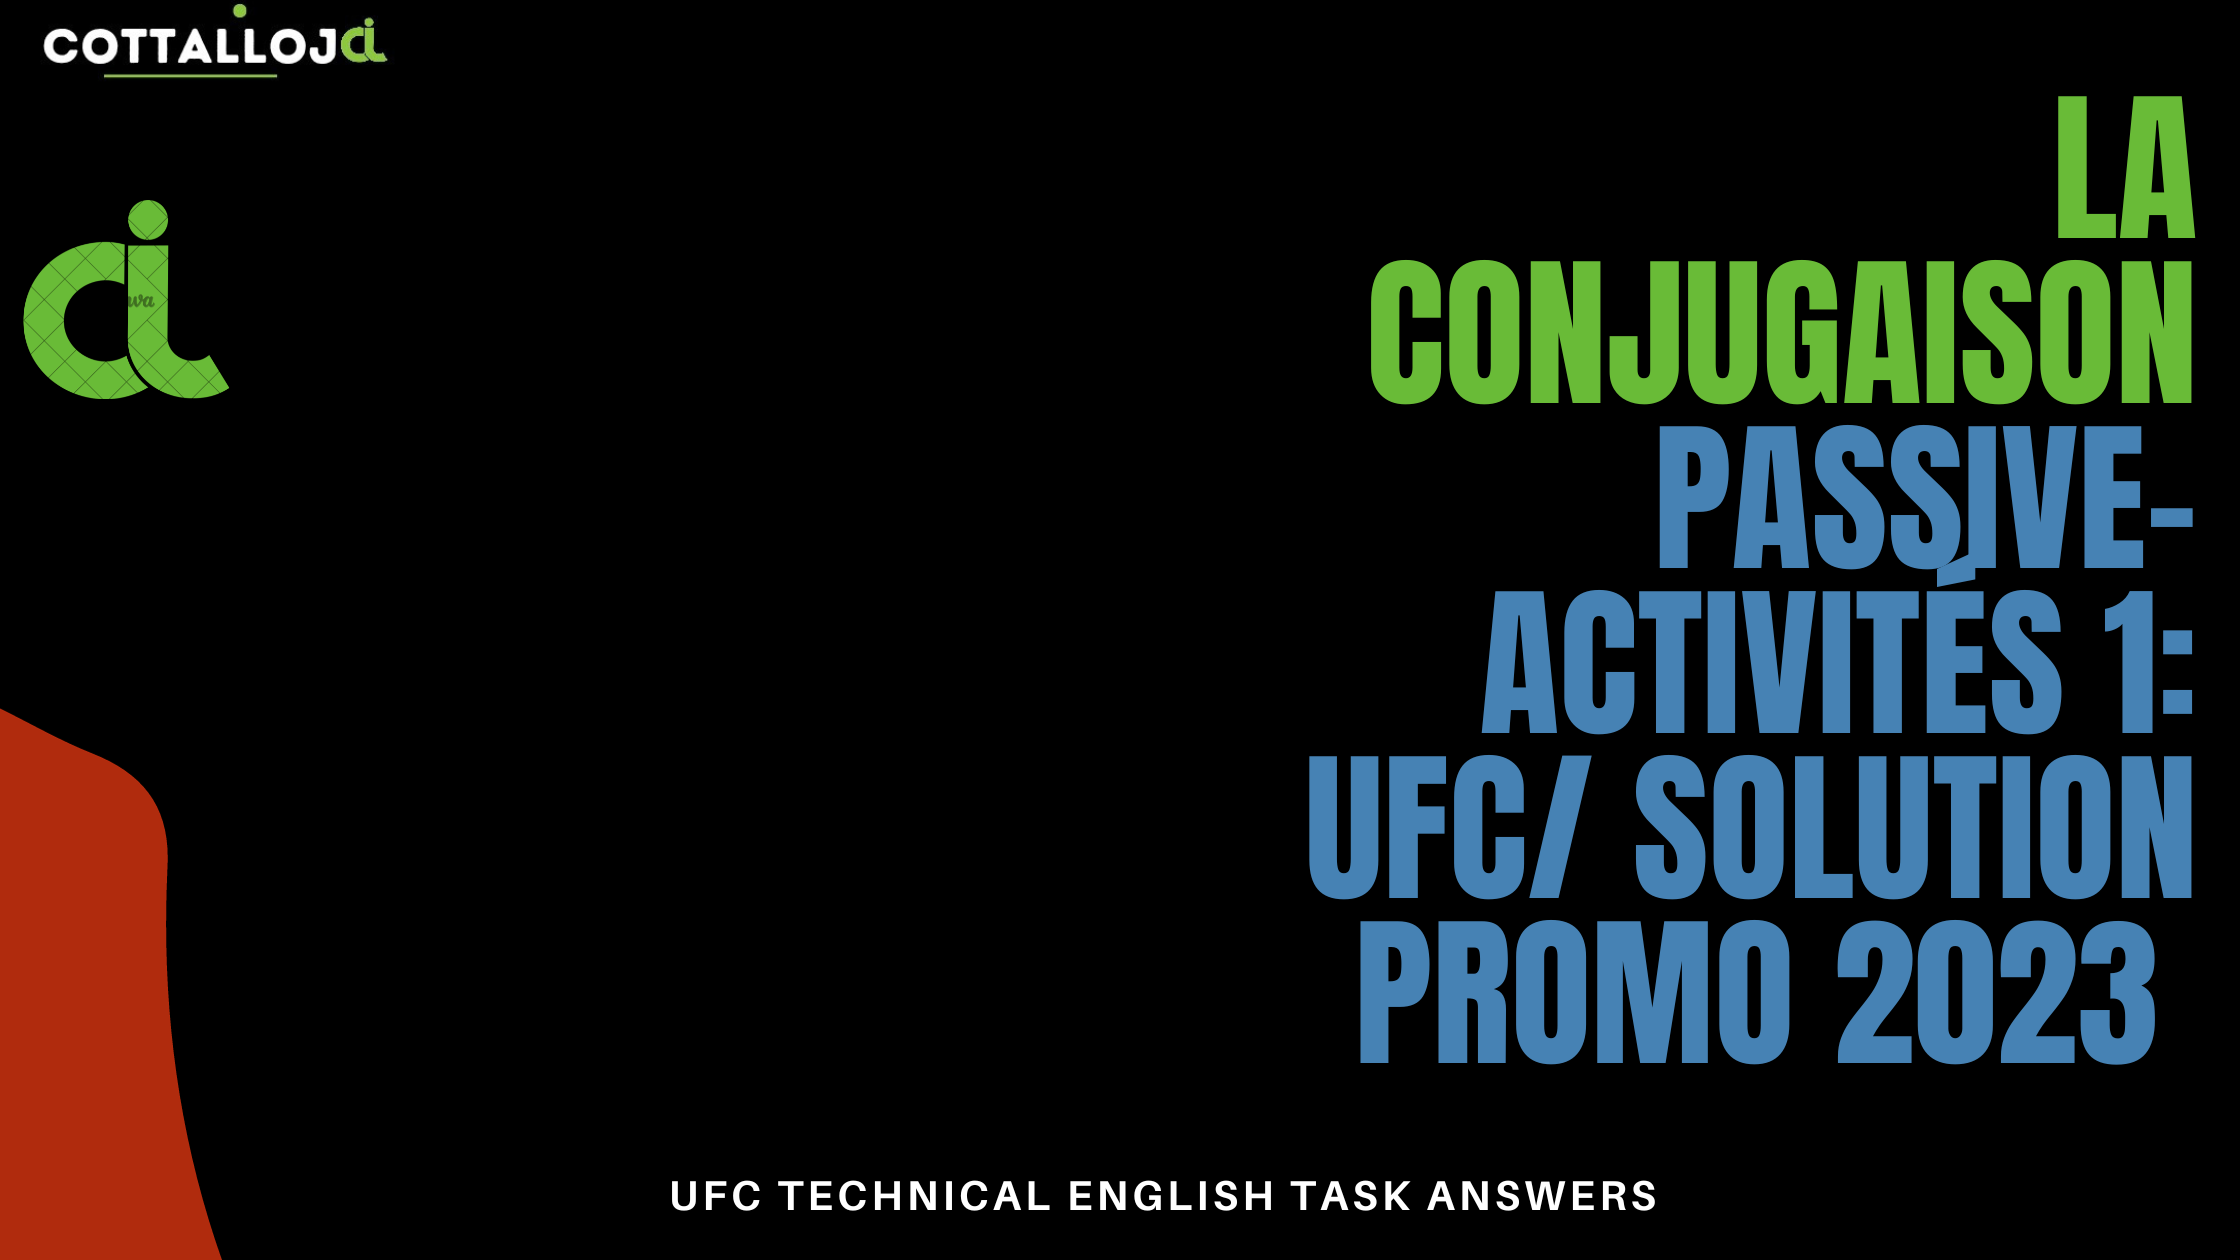 La conjugaison passive- Activités 1: UFC/ solution promo 2023